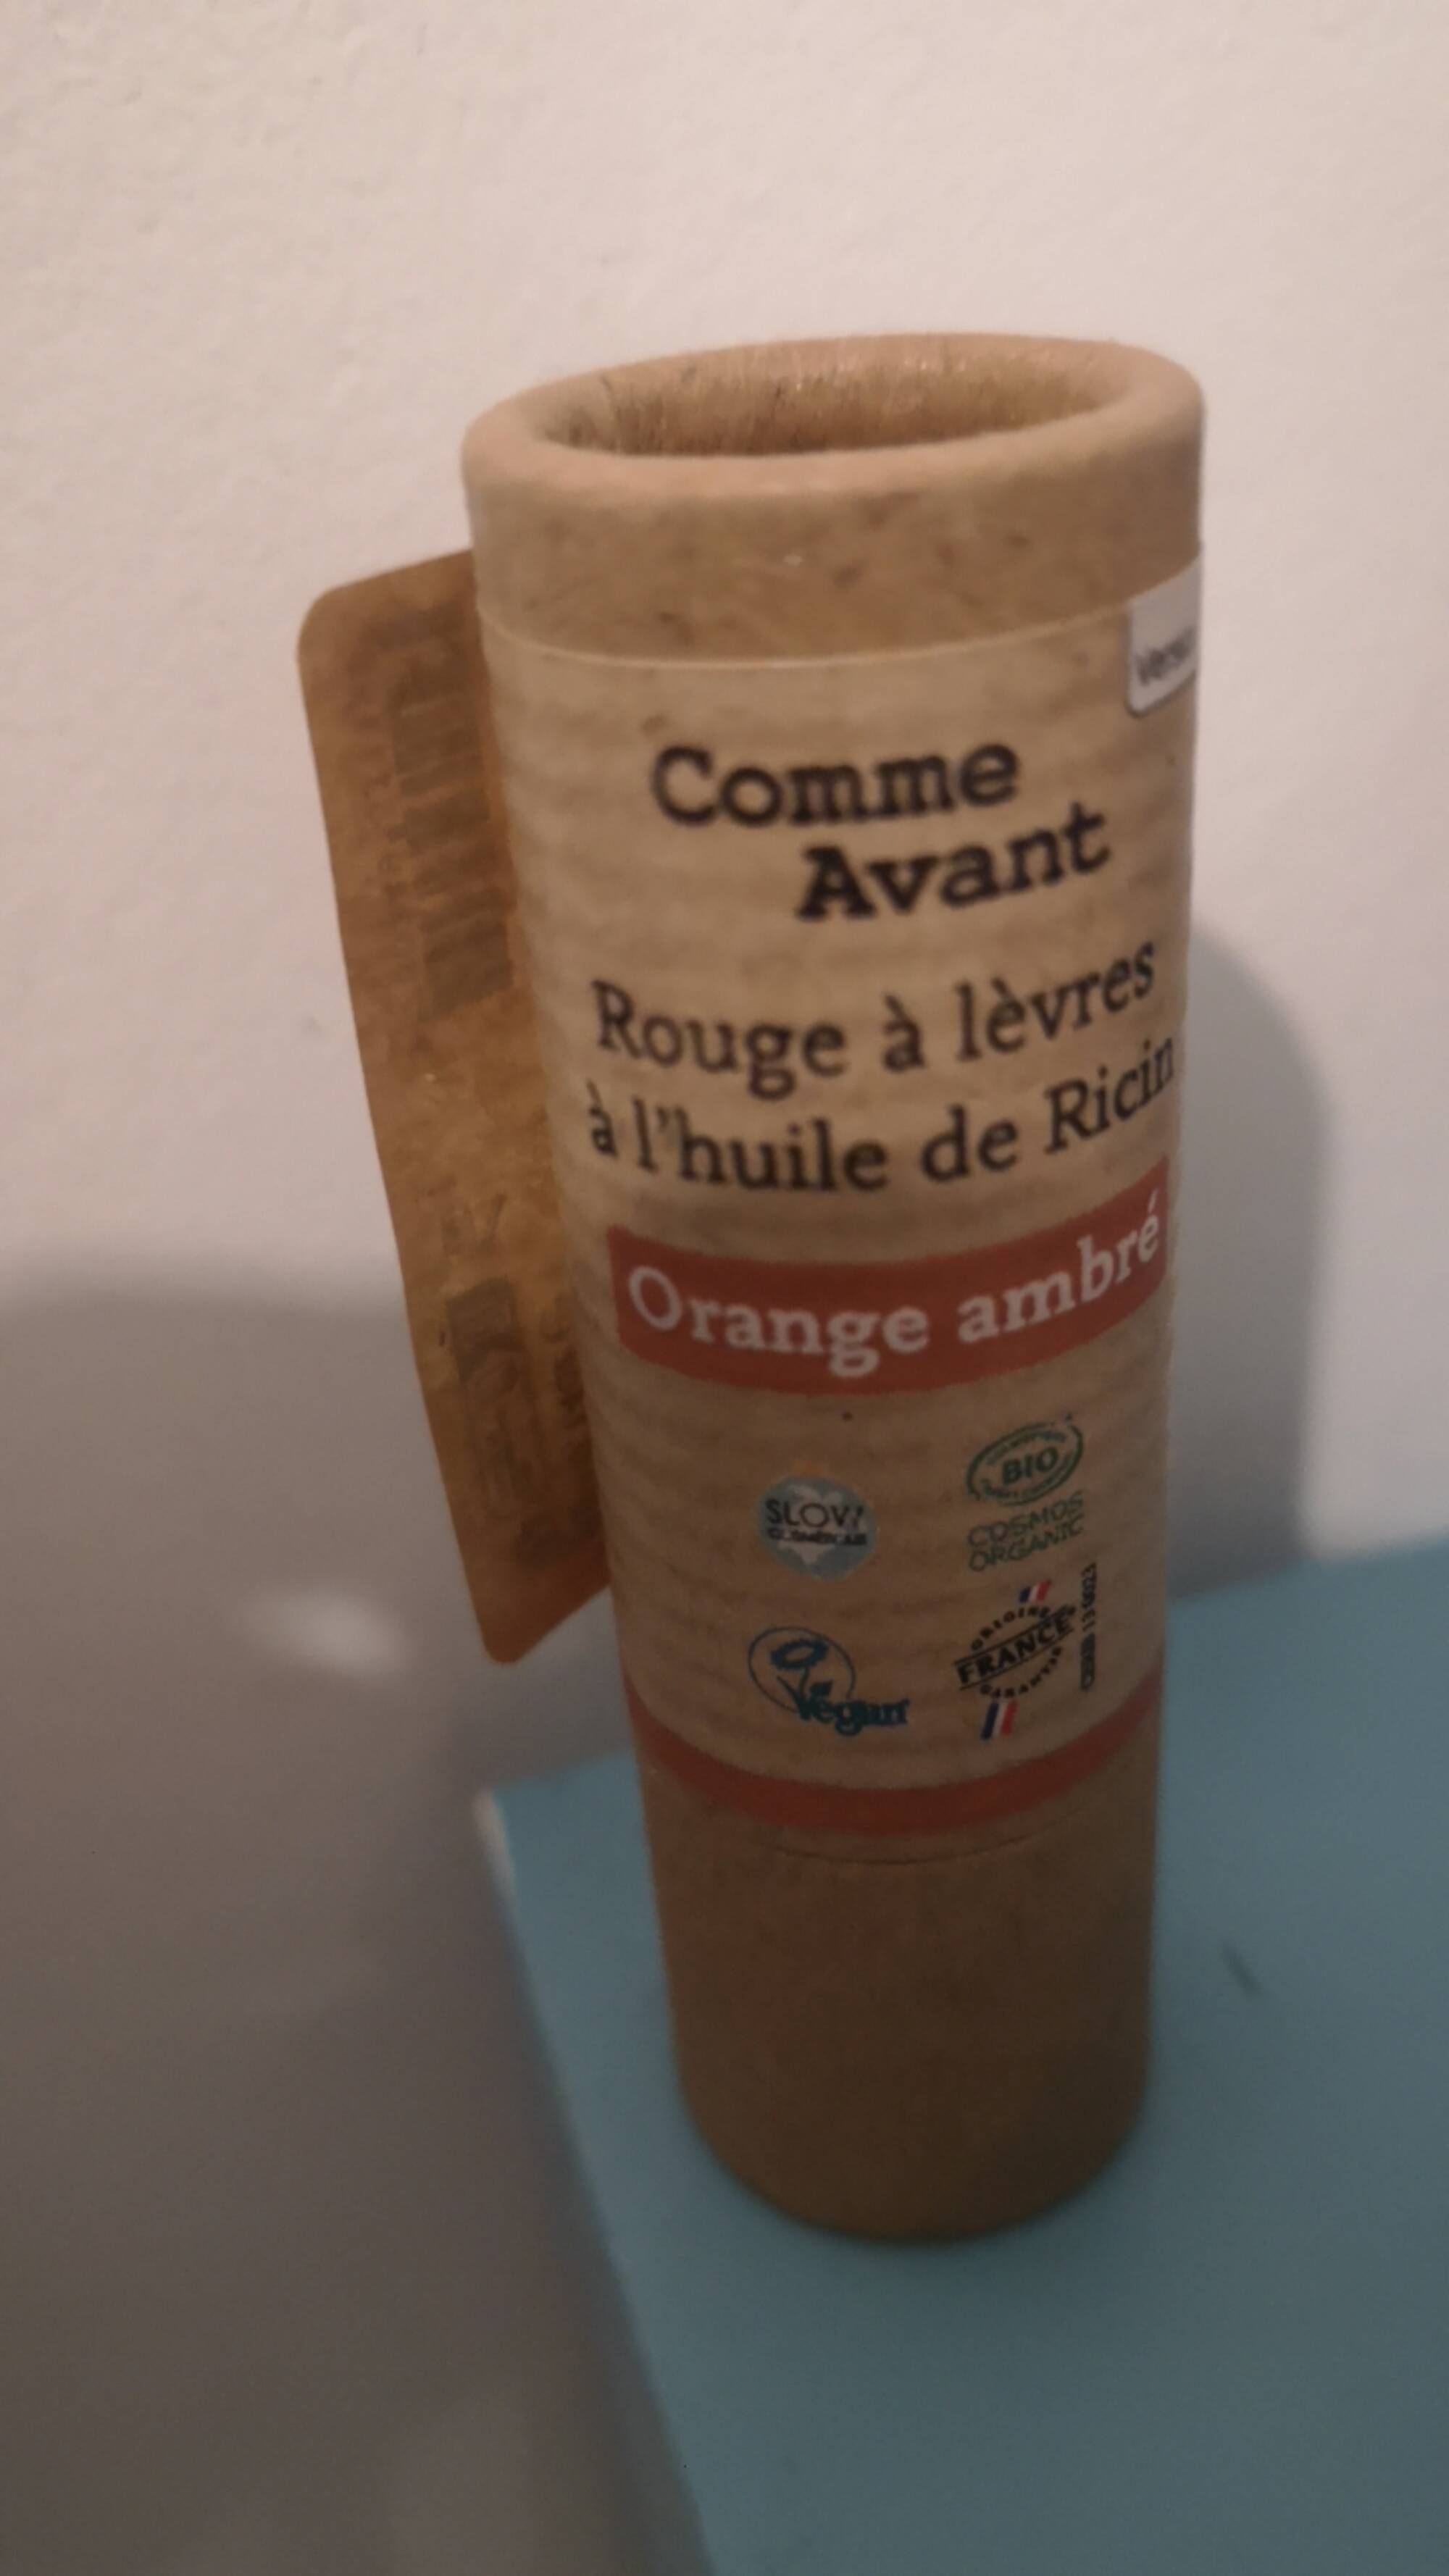 COMME AVANT - Rouge à lèvres à l'huile de ricin orange ambré 